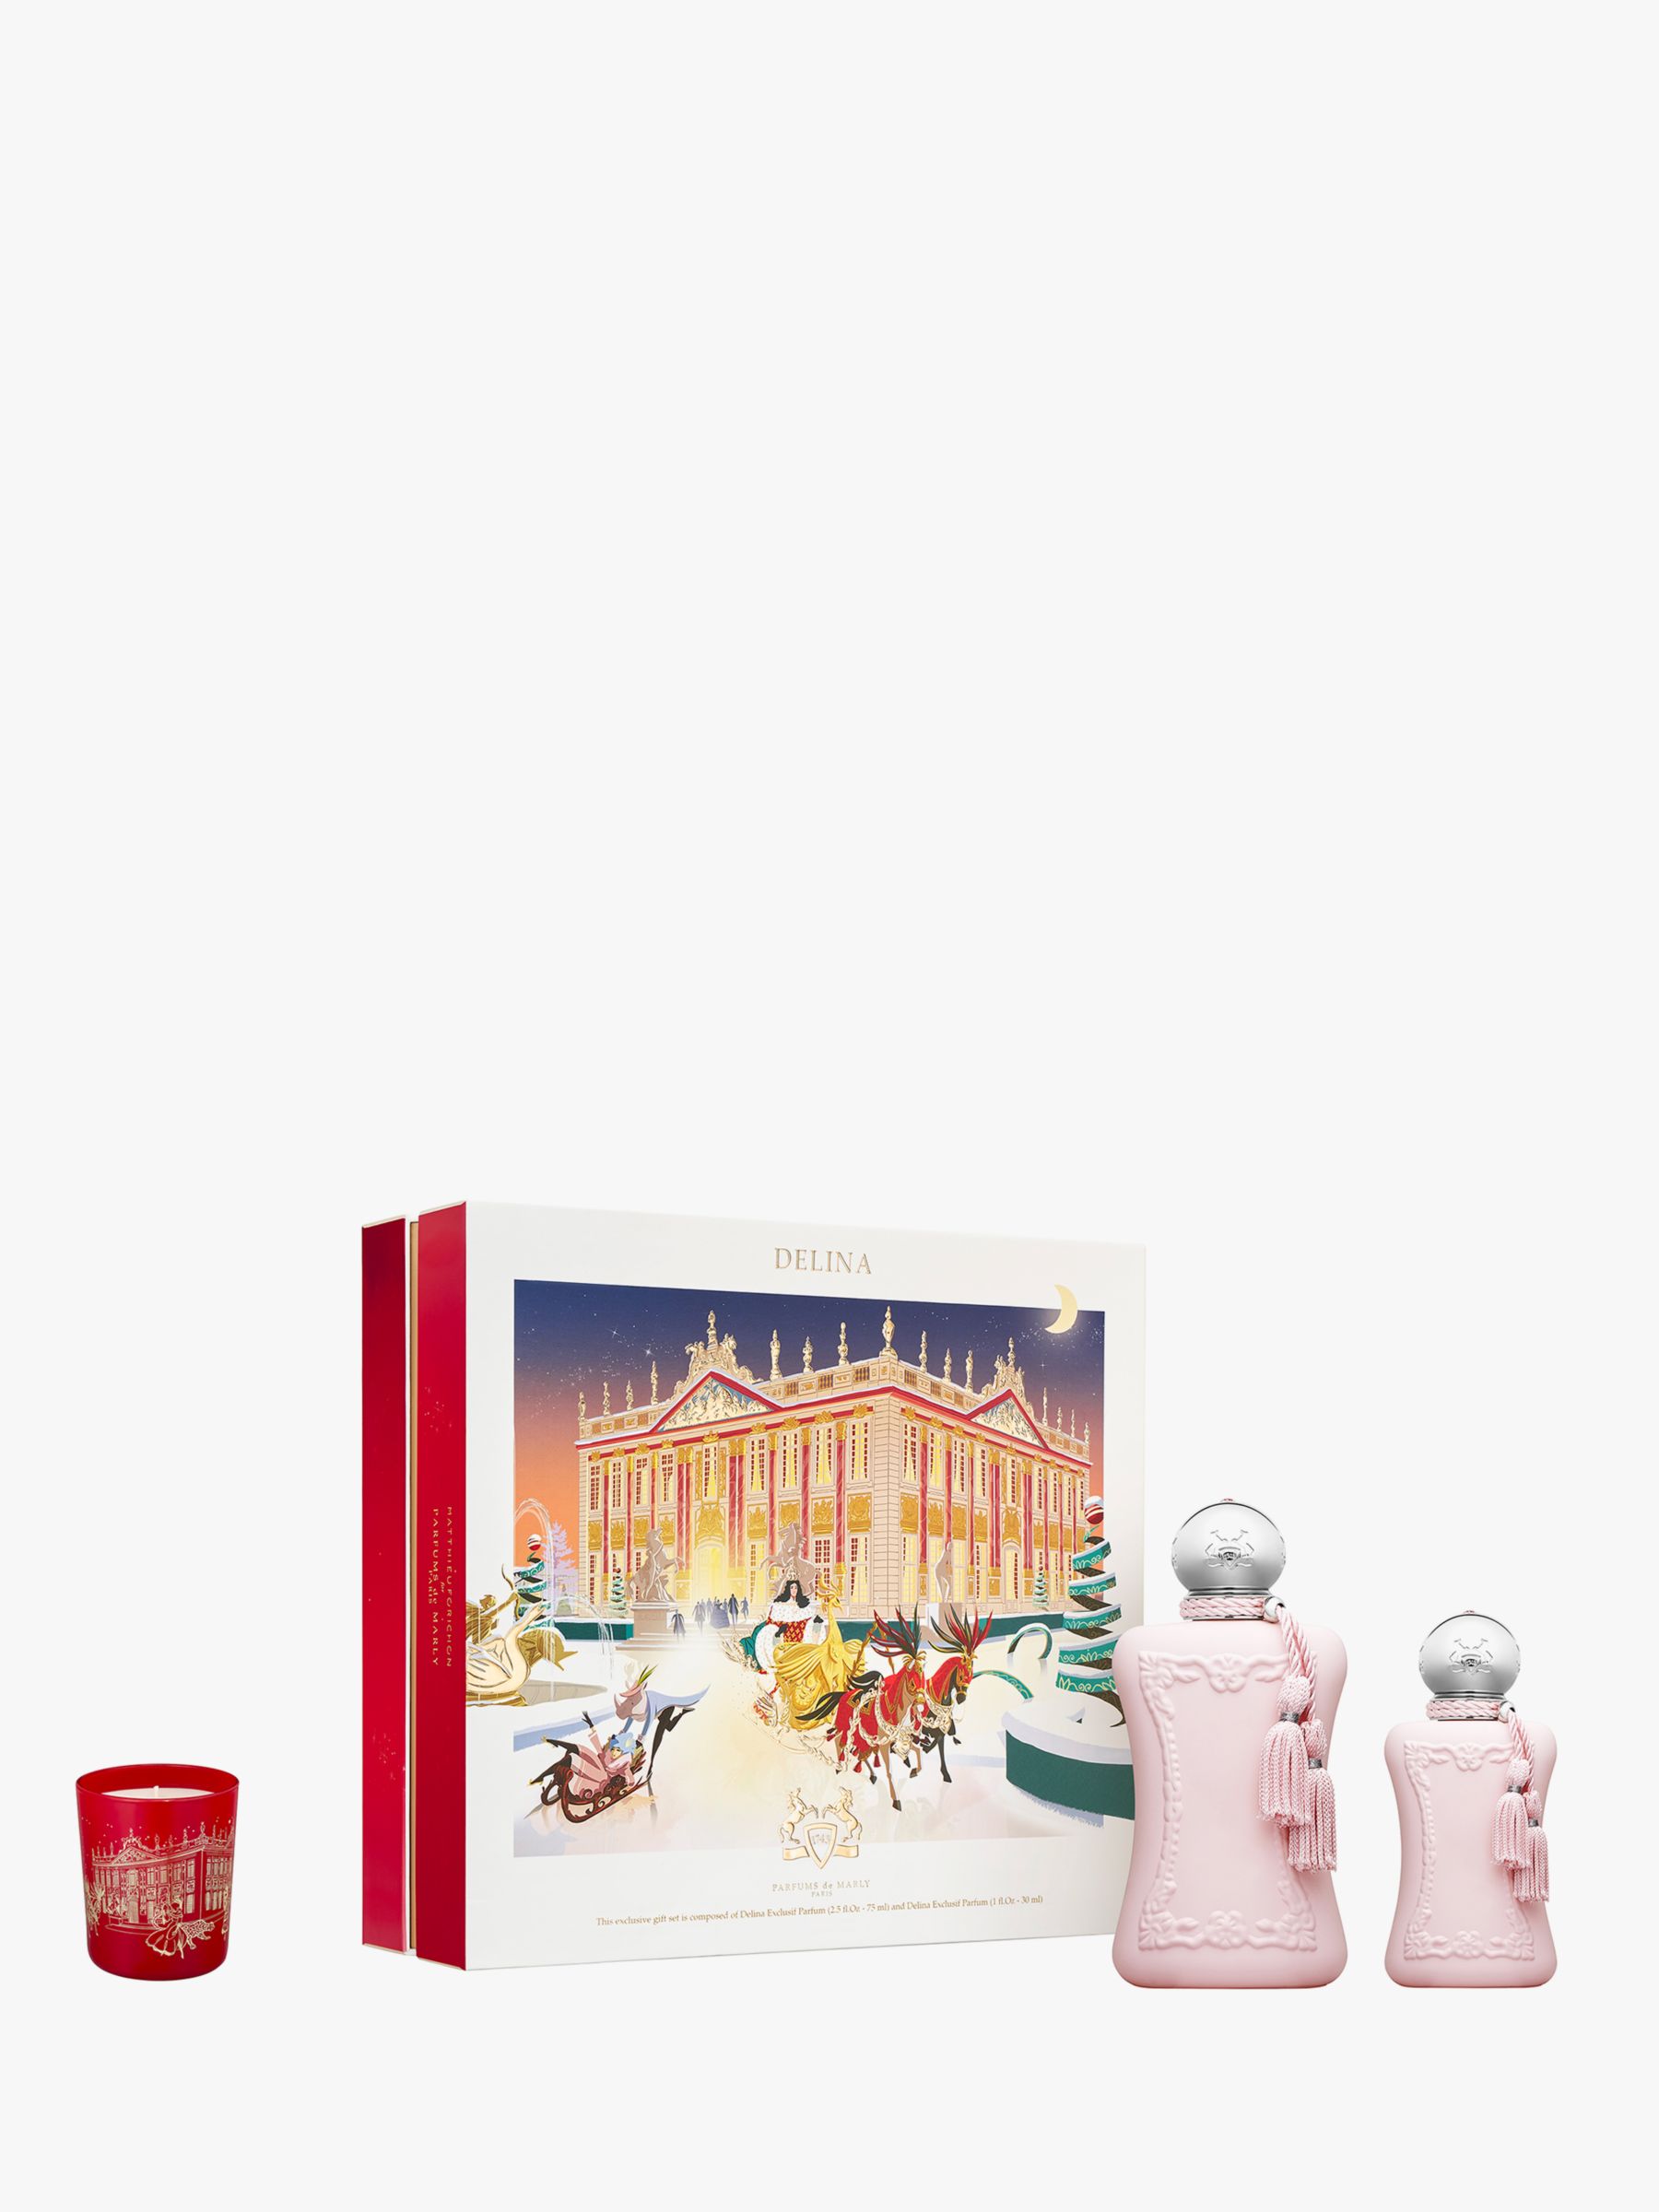 Parfums de Marly Delina Eau de Parfum 75ml & 30ml Fragrance Gift Set Bundle with Gift